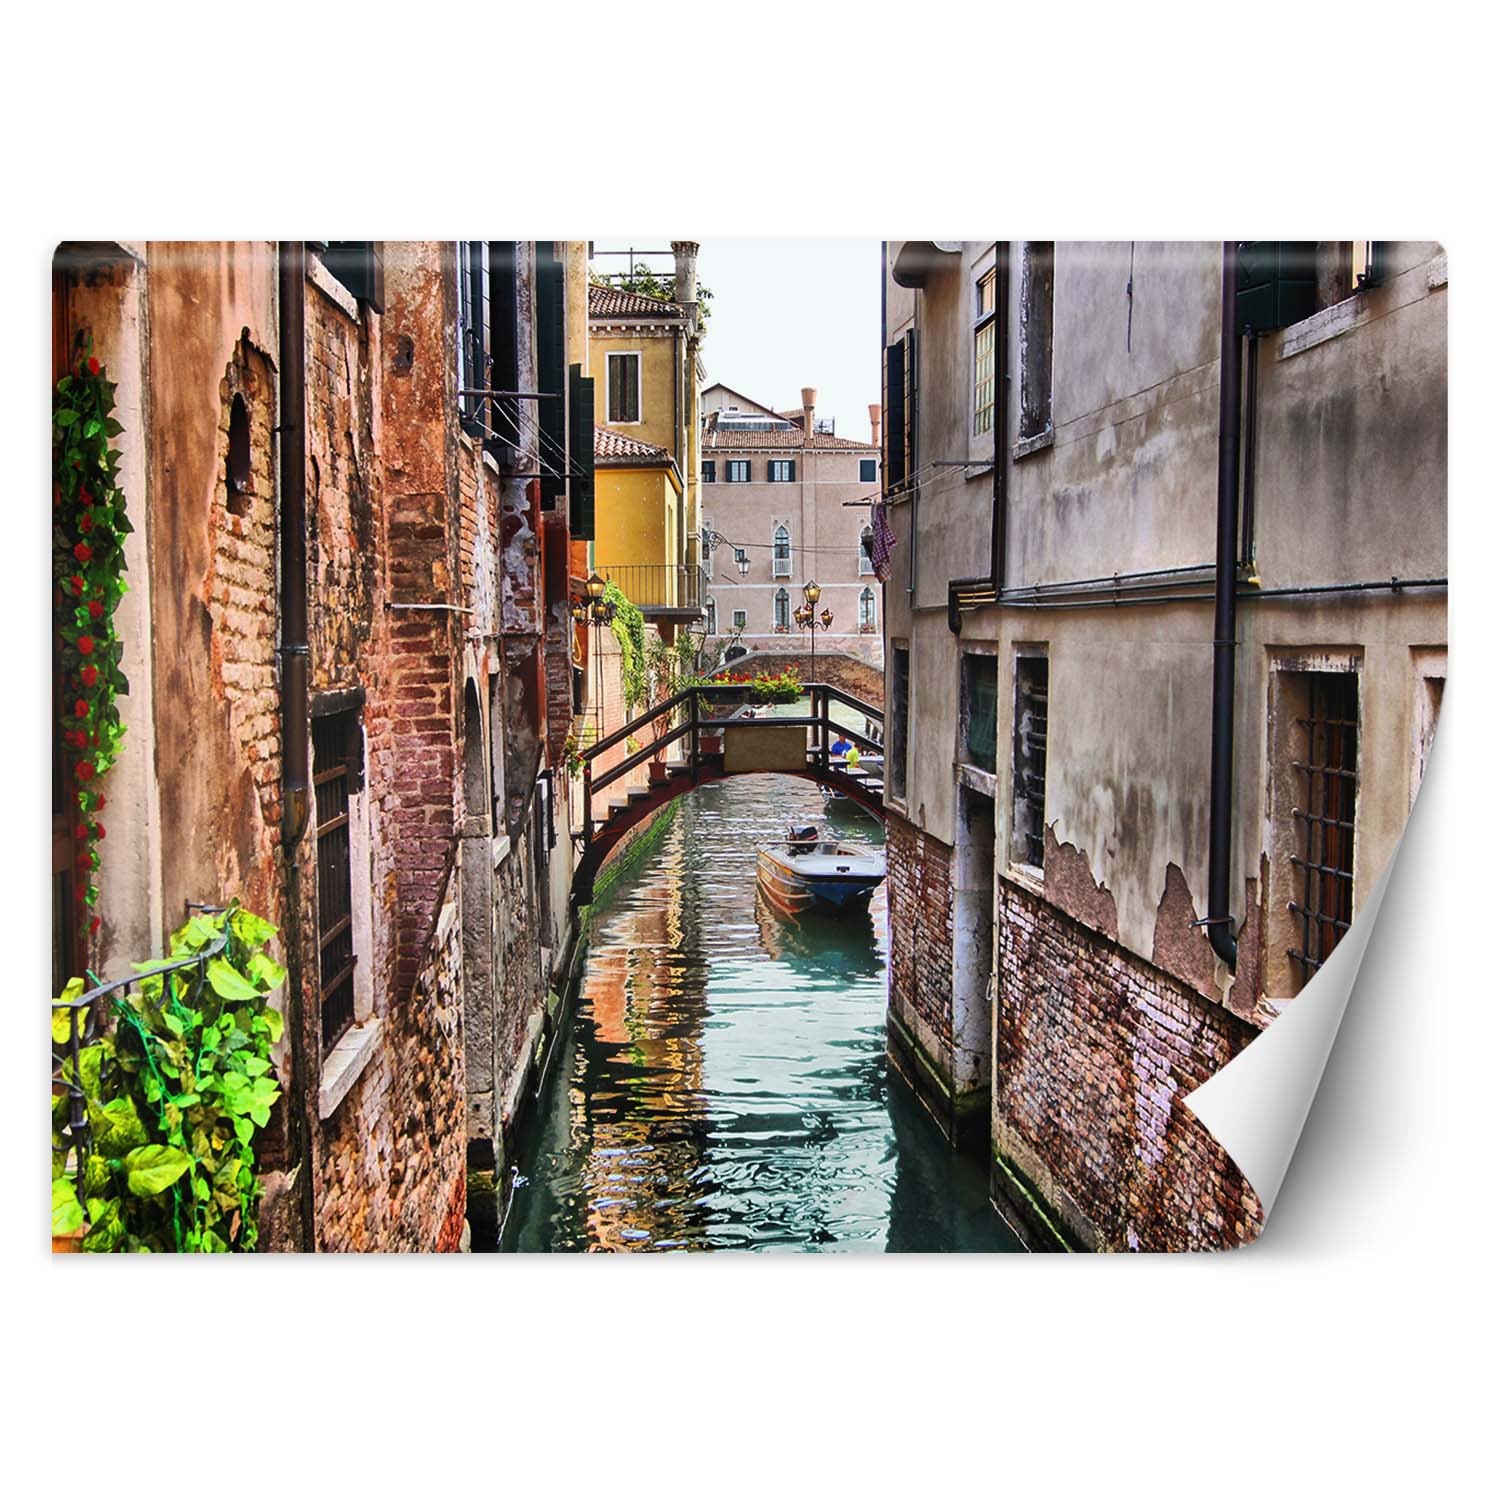 Trend24 – Behang – Venetië – Behangpapier – Fotobehang – Behang Woonkamer – 450x315x2 cm – Incl. behanglijm